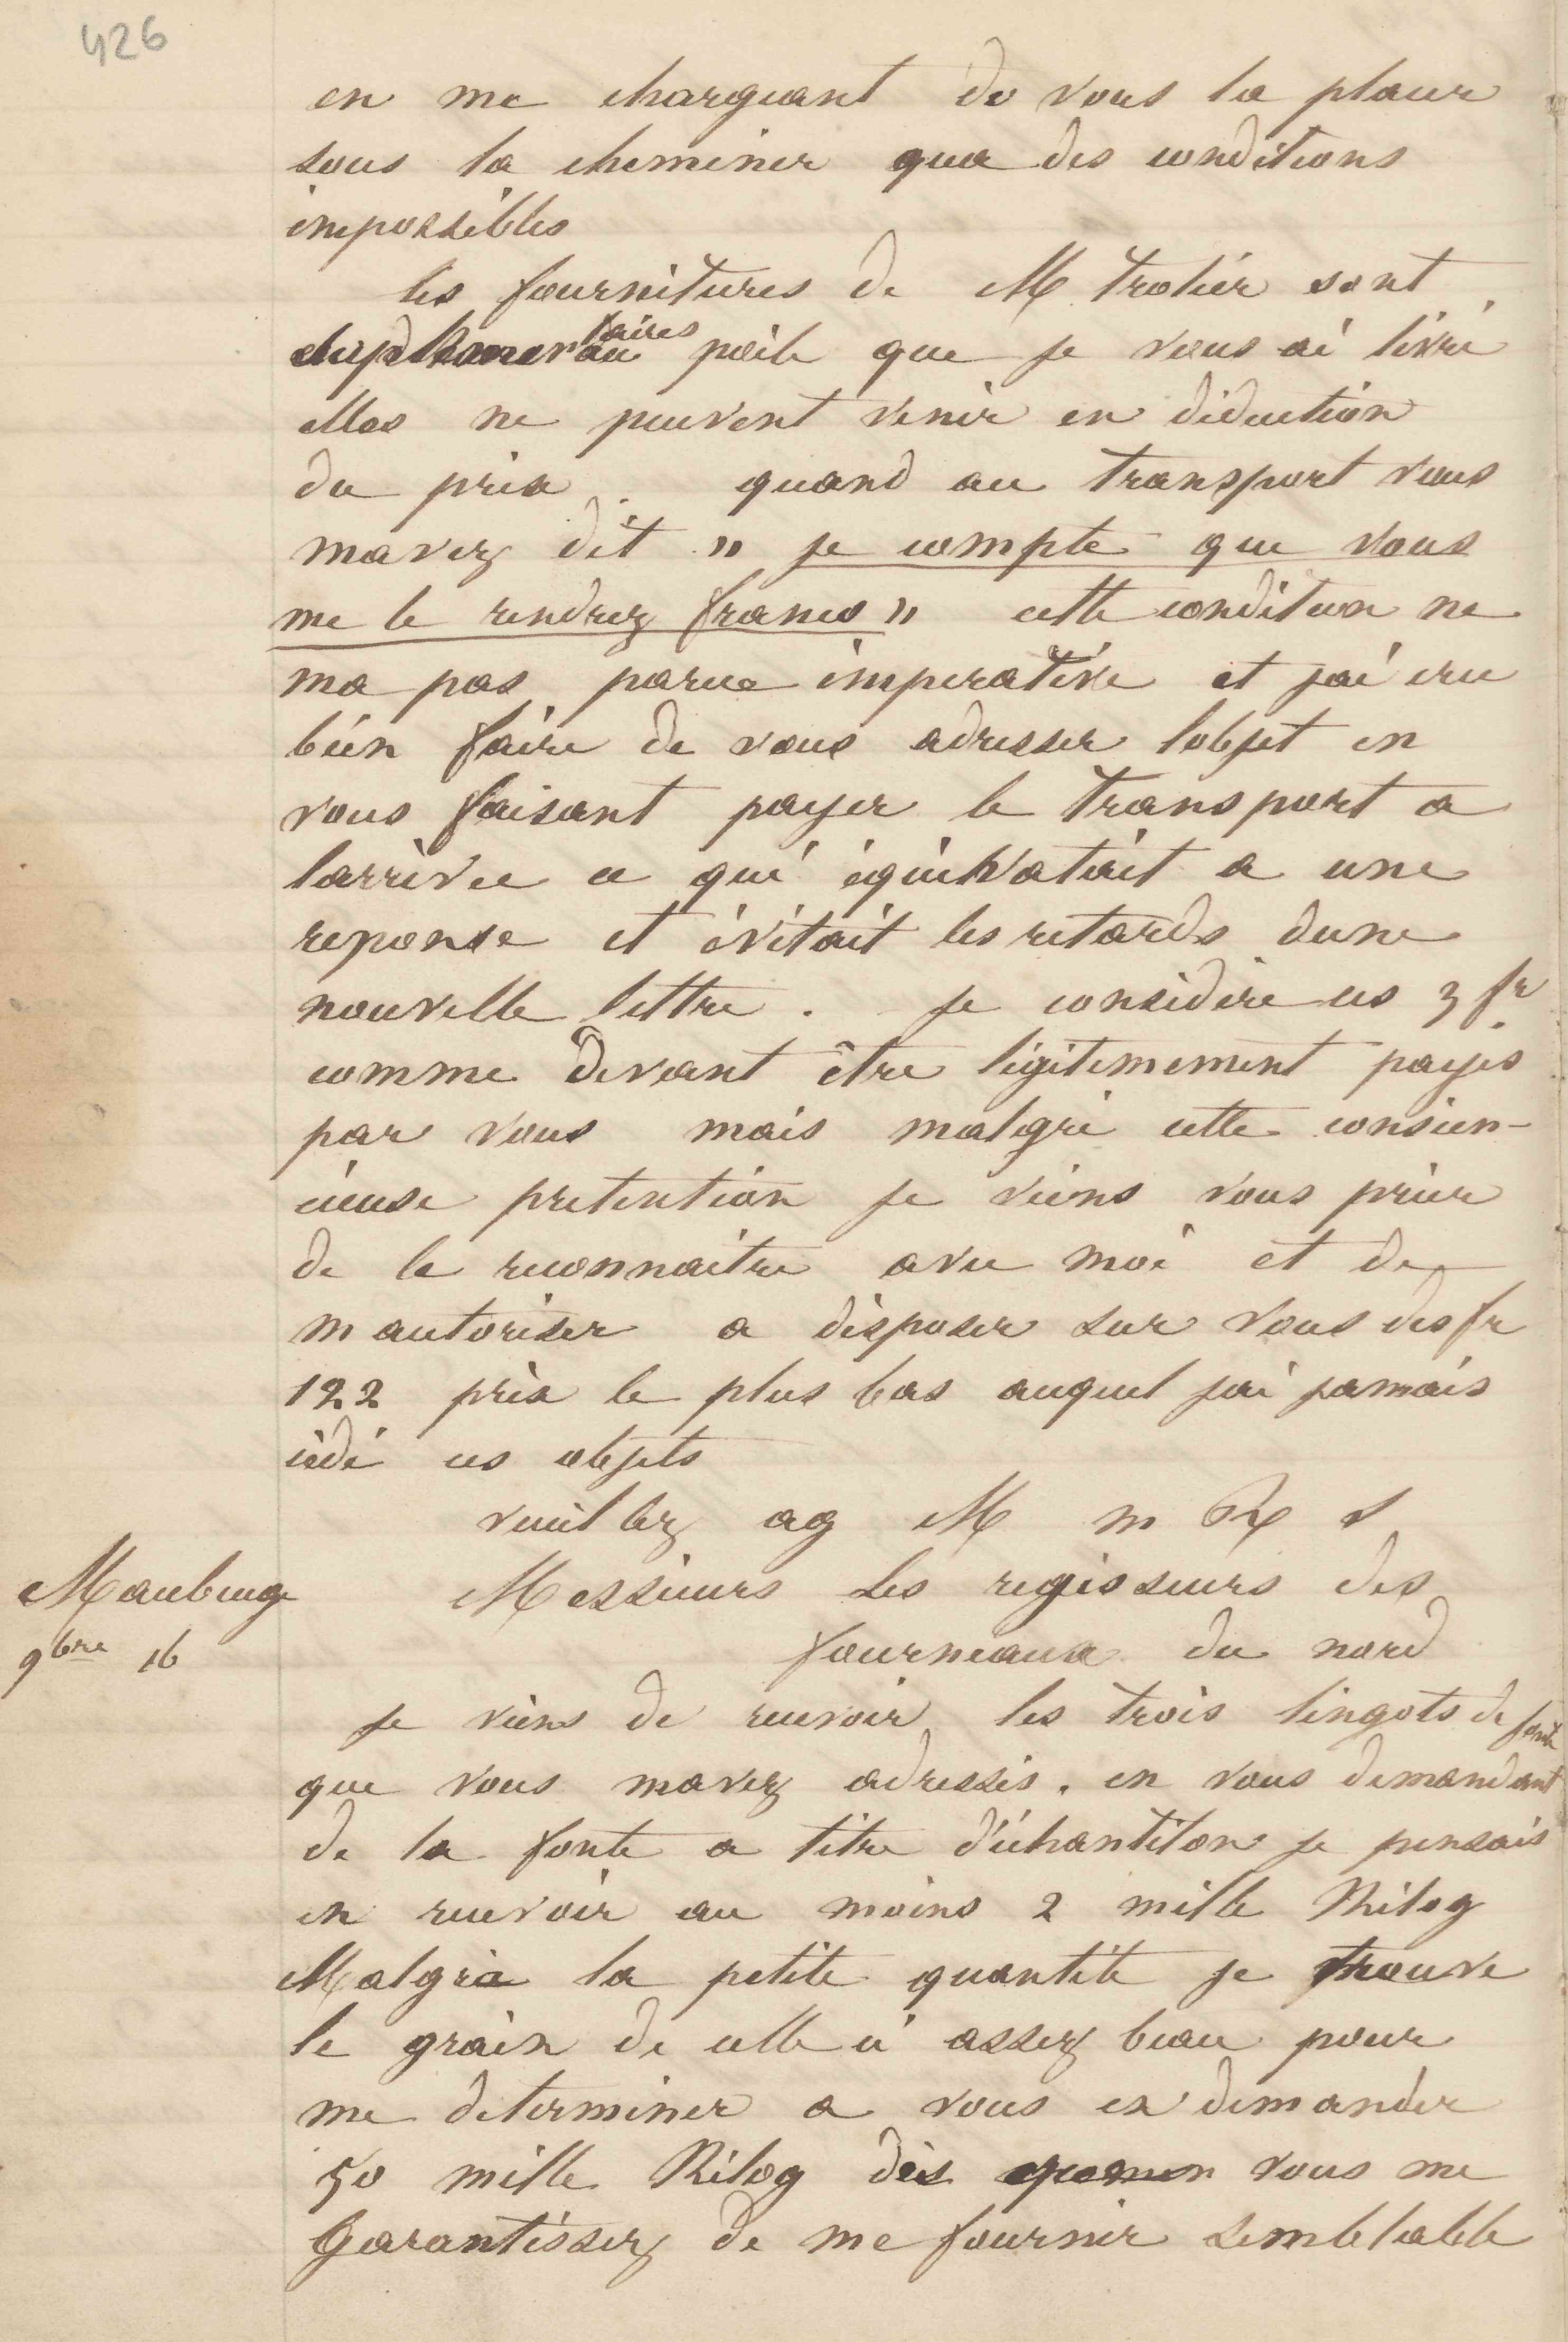 Jean-Baptiste André Godin à la Société des hauts-fourneaux du Nord, 16 novembre [1849]